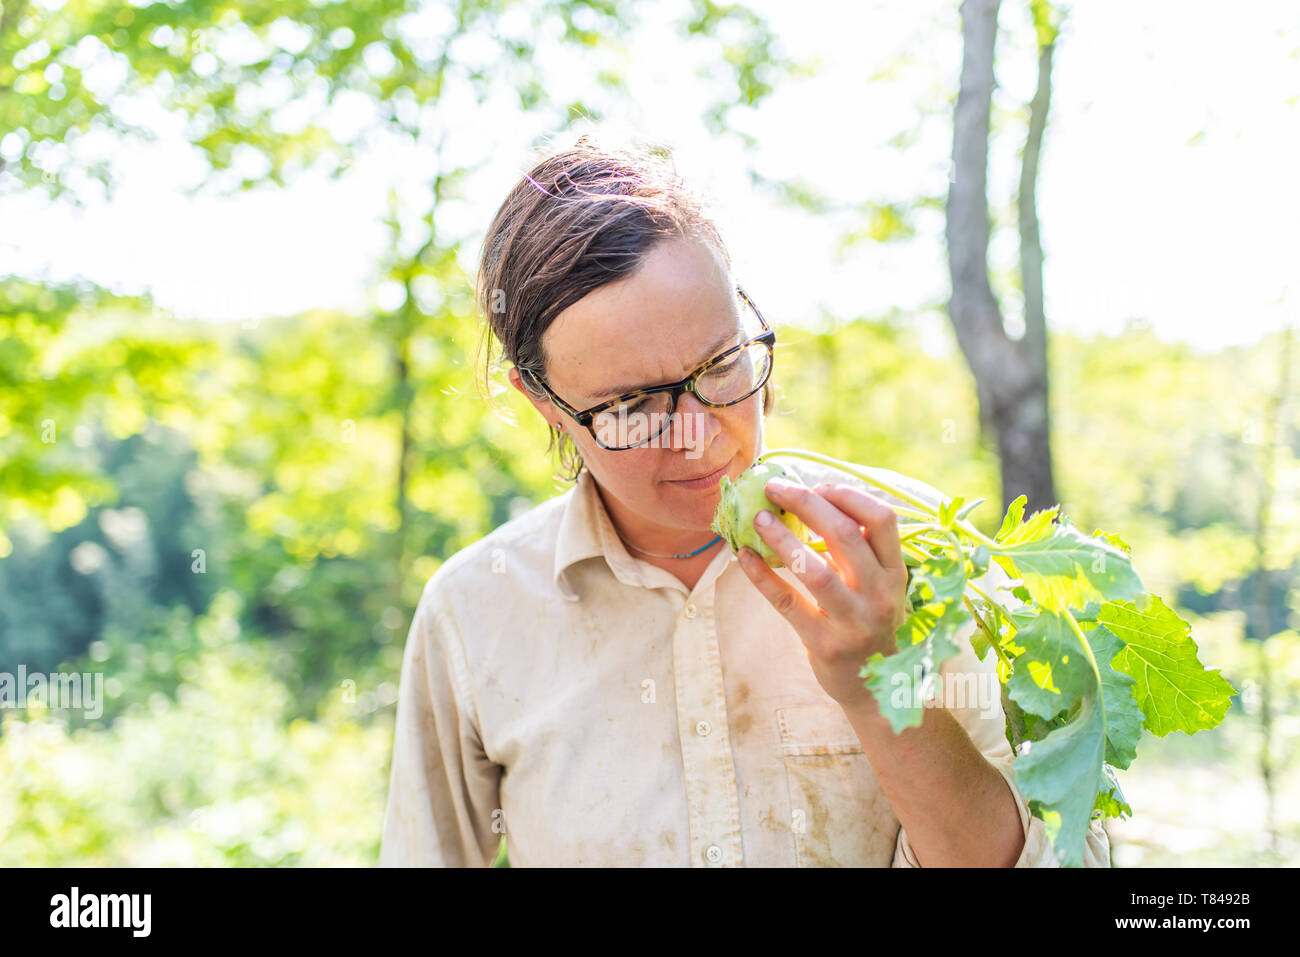 Hembra madura jardinero busca verdes en el jardín Foto de stock